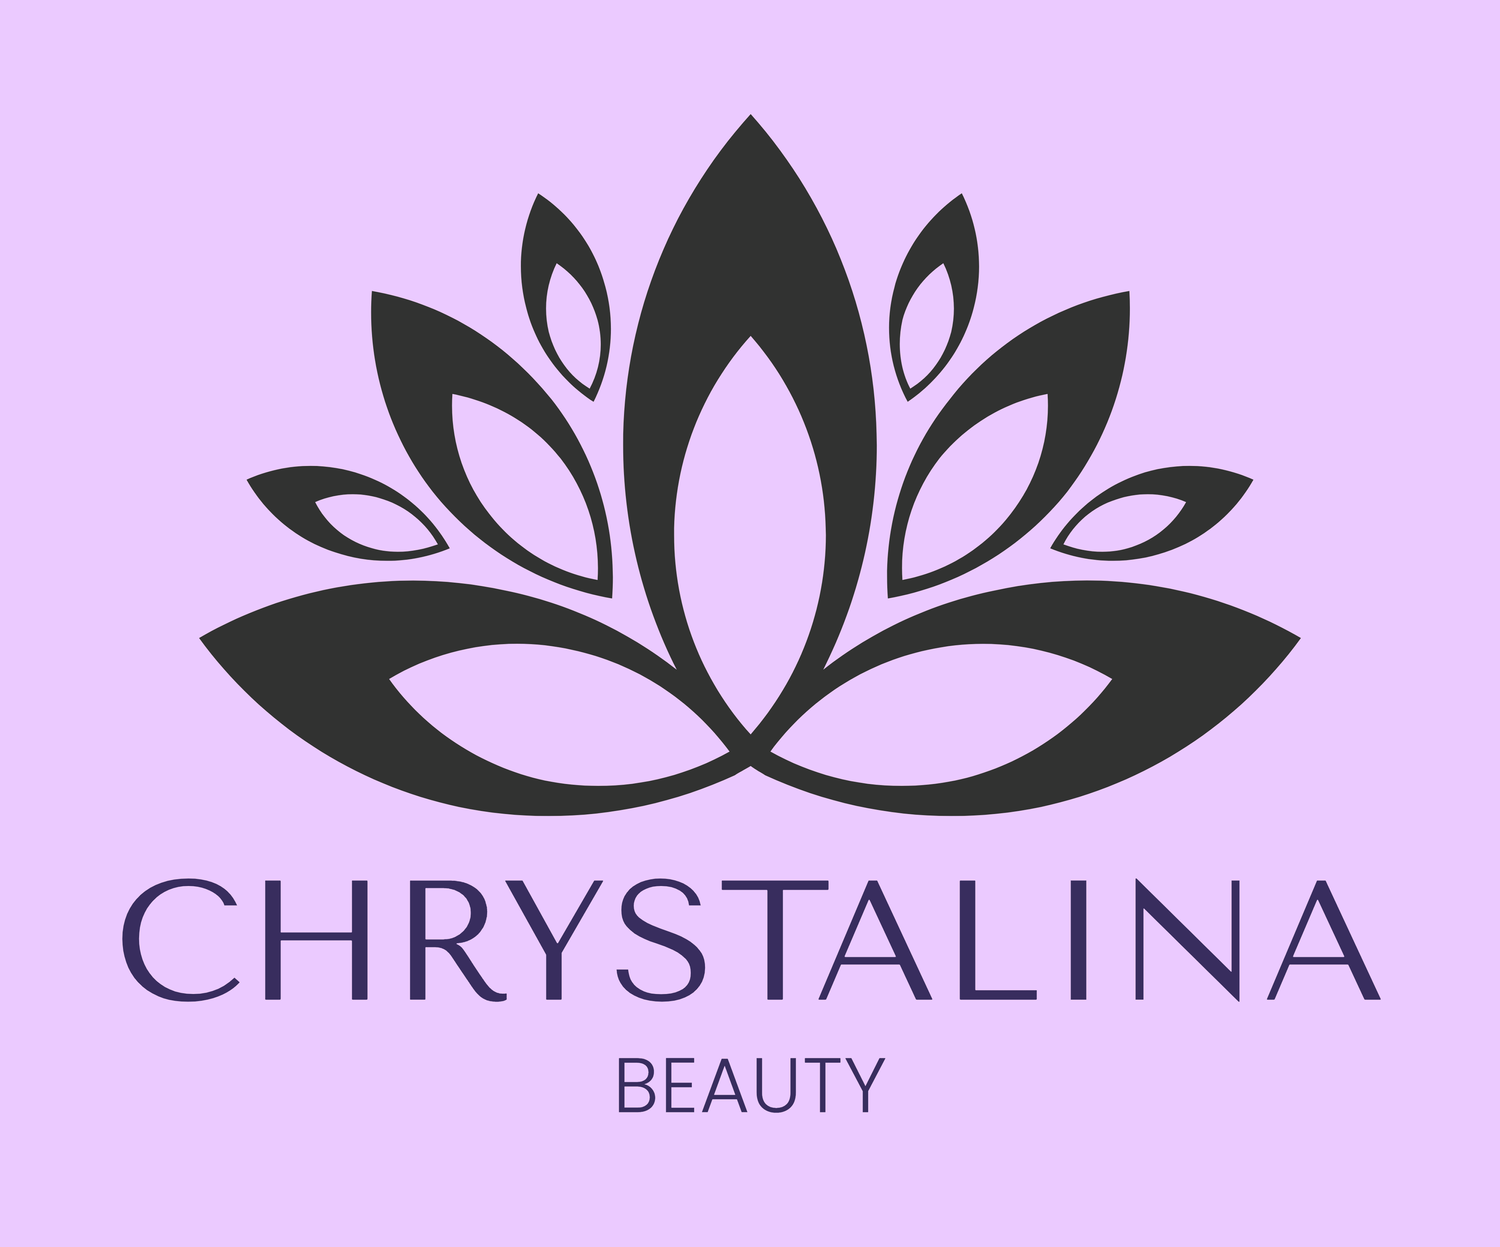 Chrystalina Beauty